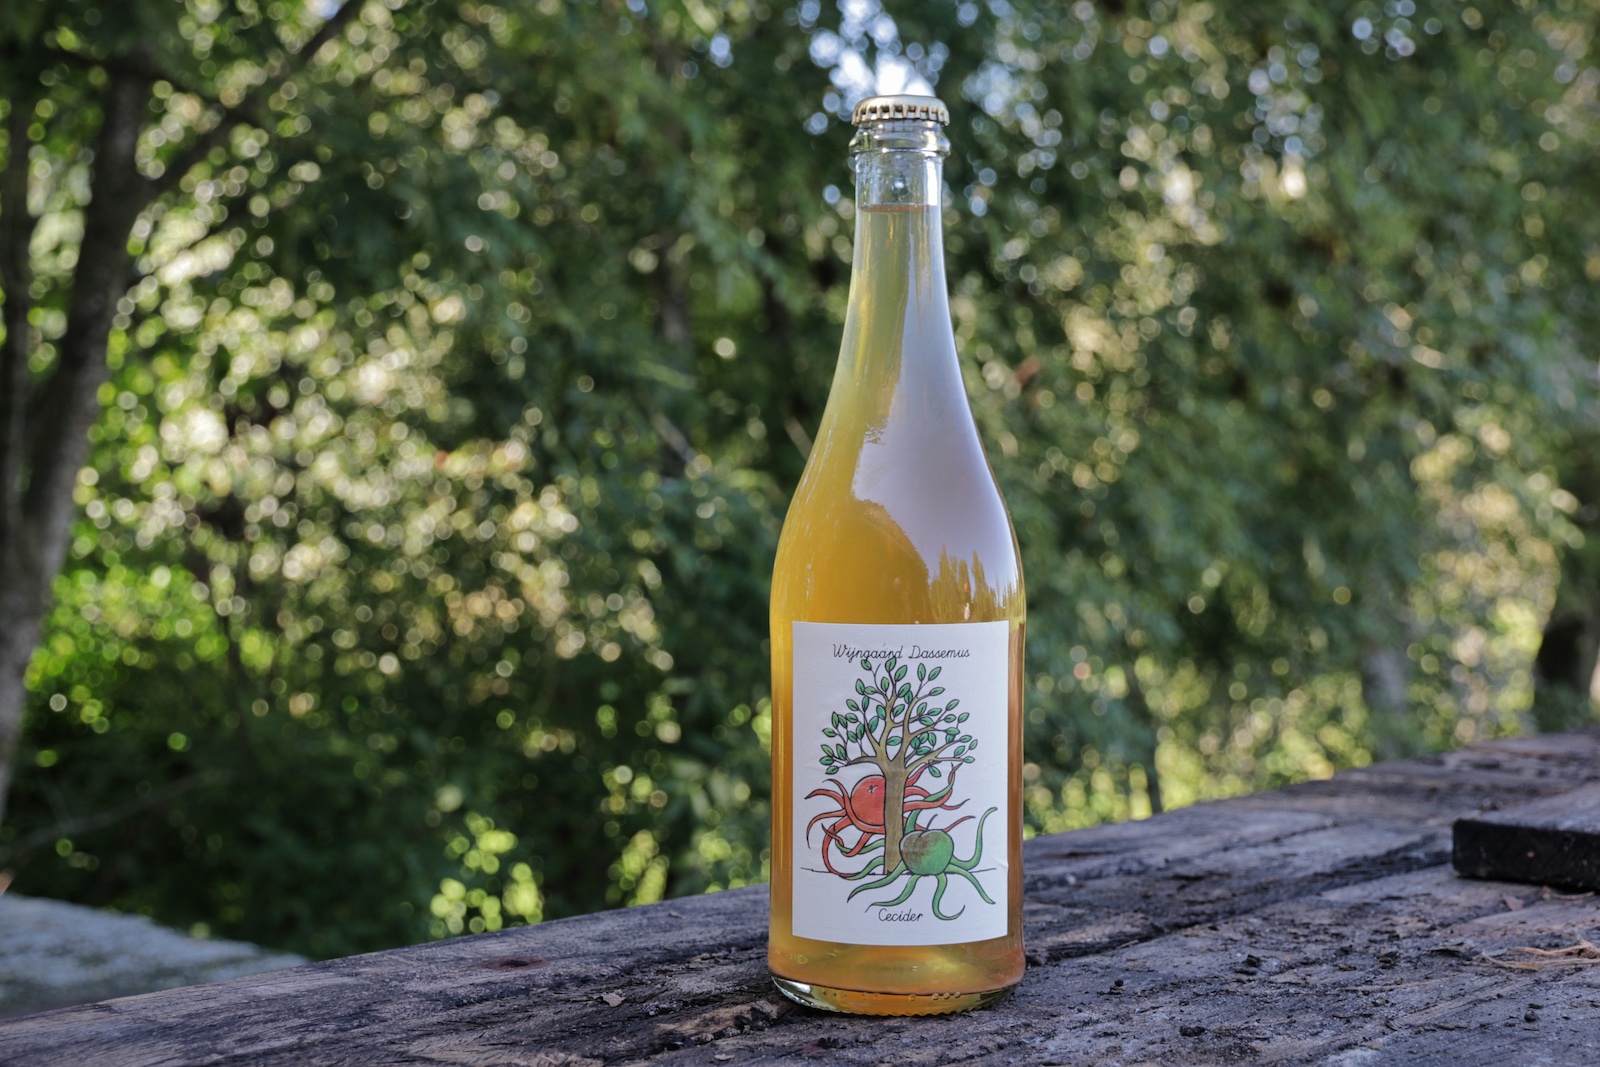 Cecider, een appel cider crossover van Wijngaard Dassemus